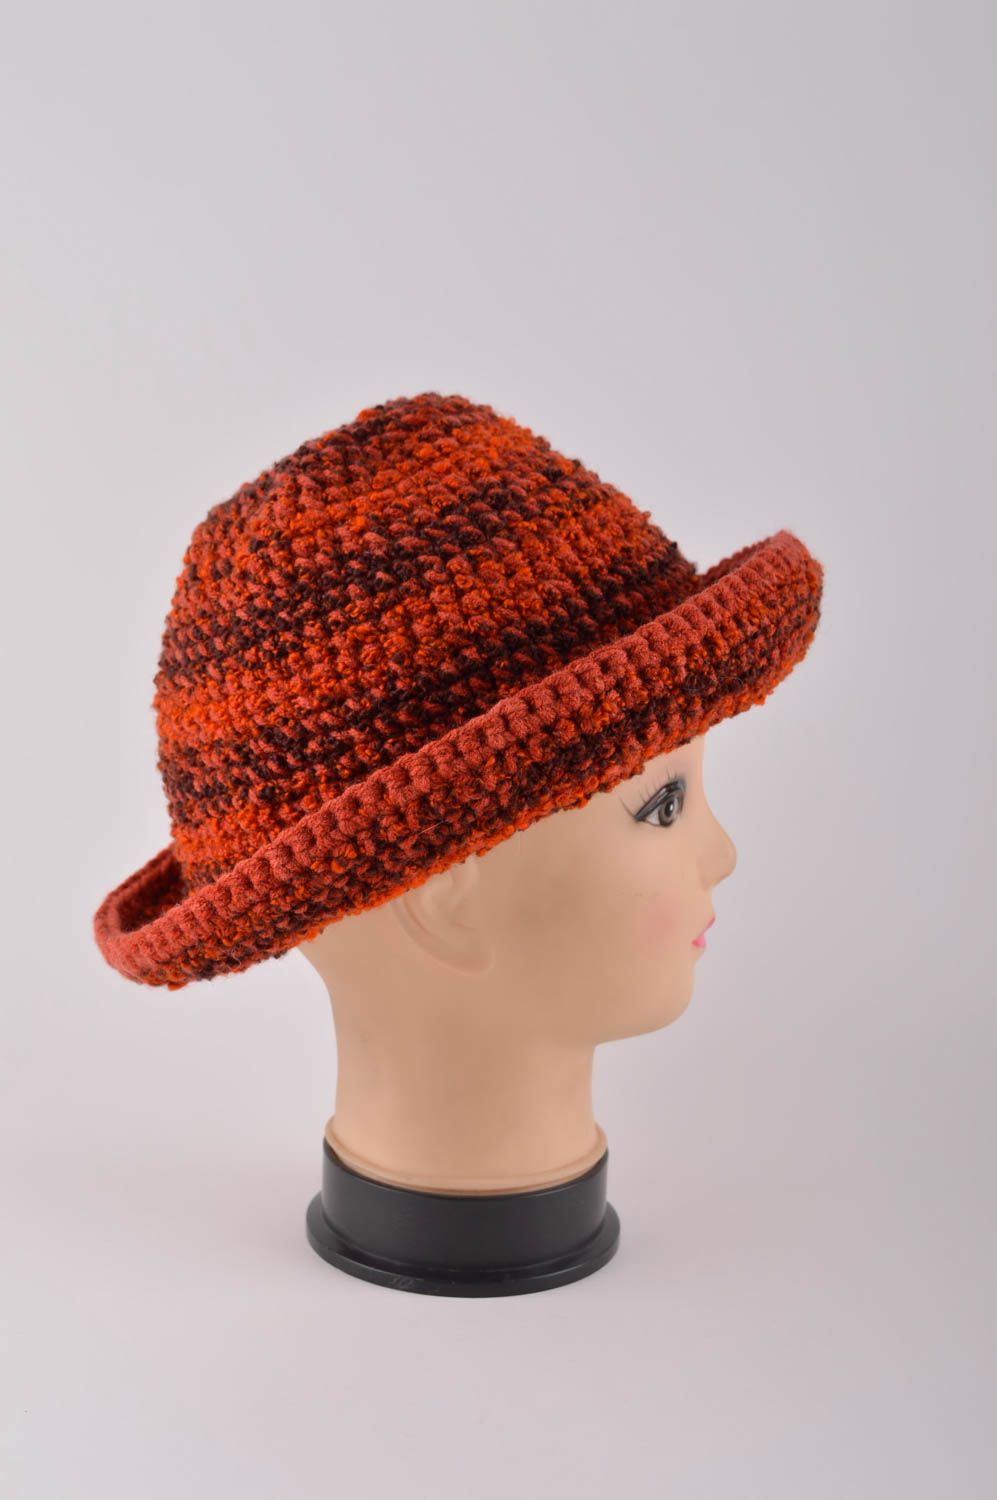 Handmade gehäkelter Hut Damen Accessoire modischer Hut aus Boucle schön foto 4